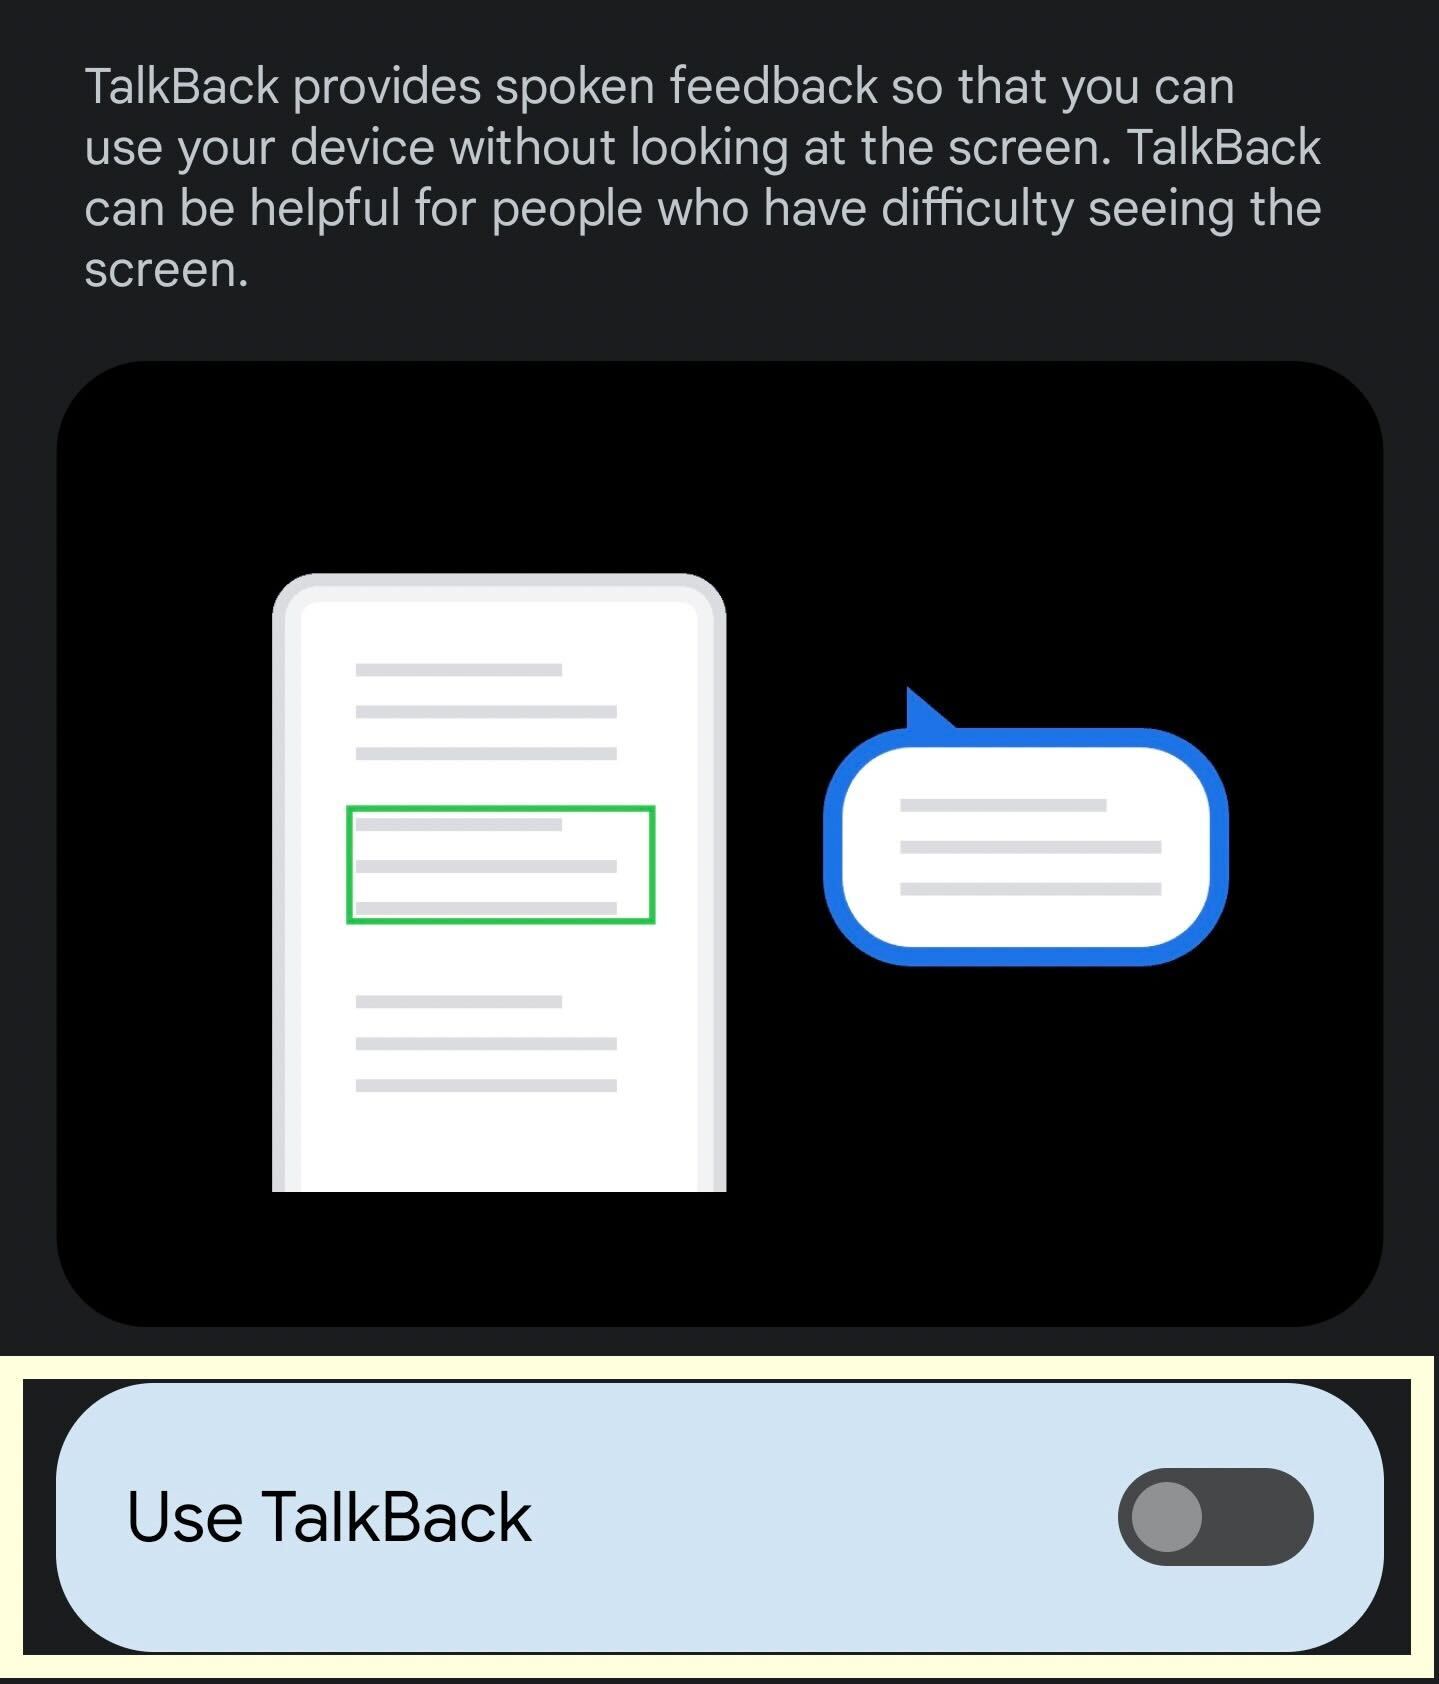 The TalkBack button